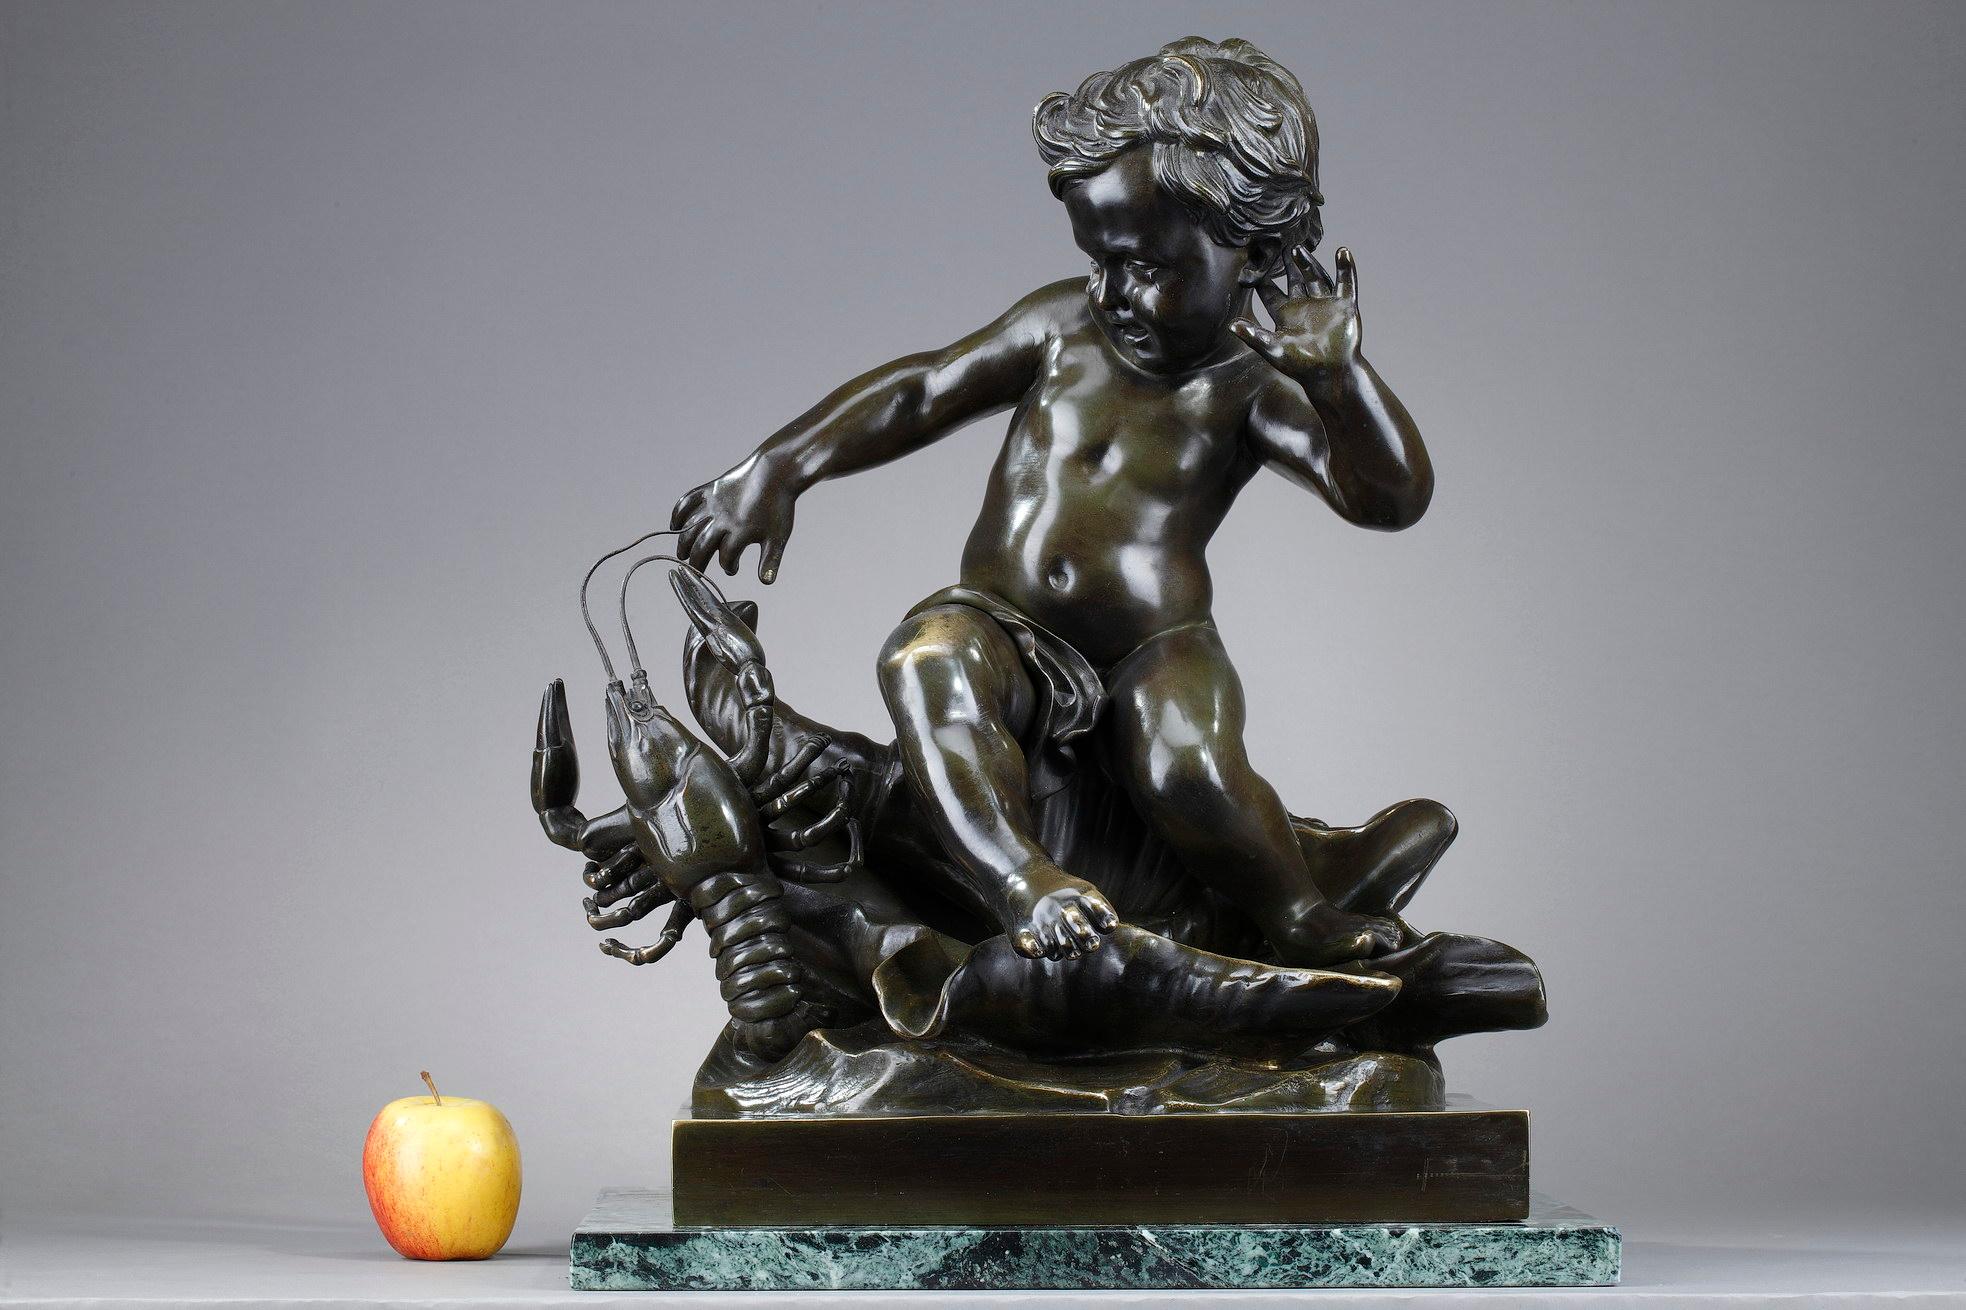 Sculpture en bronze à patine brune nuancée de vert signée Pigalle sur la base, représentant un enfant surpris par le pincement d'une écrevisse. Des larmes coulent sur les joues de l'enfant nu, assis sur un grand coquillage, car il vient de se faire